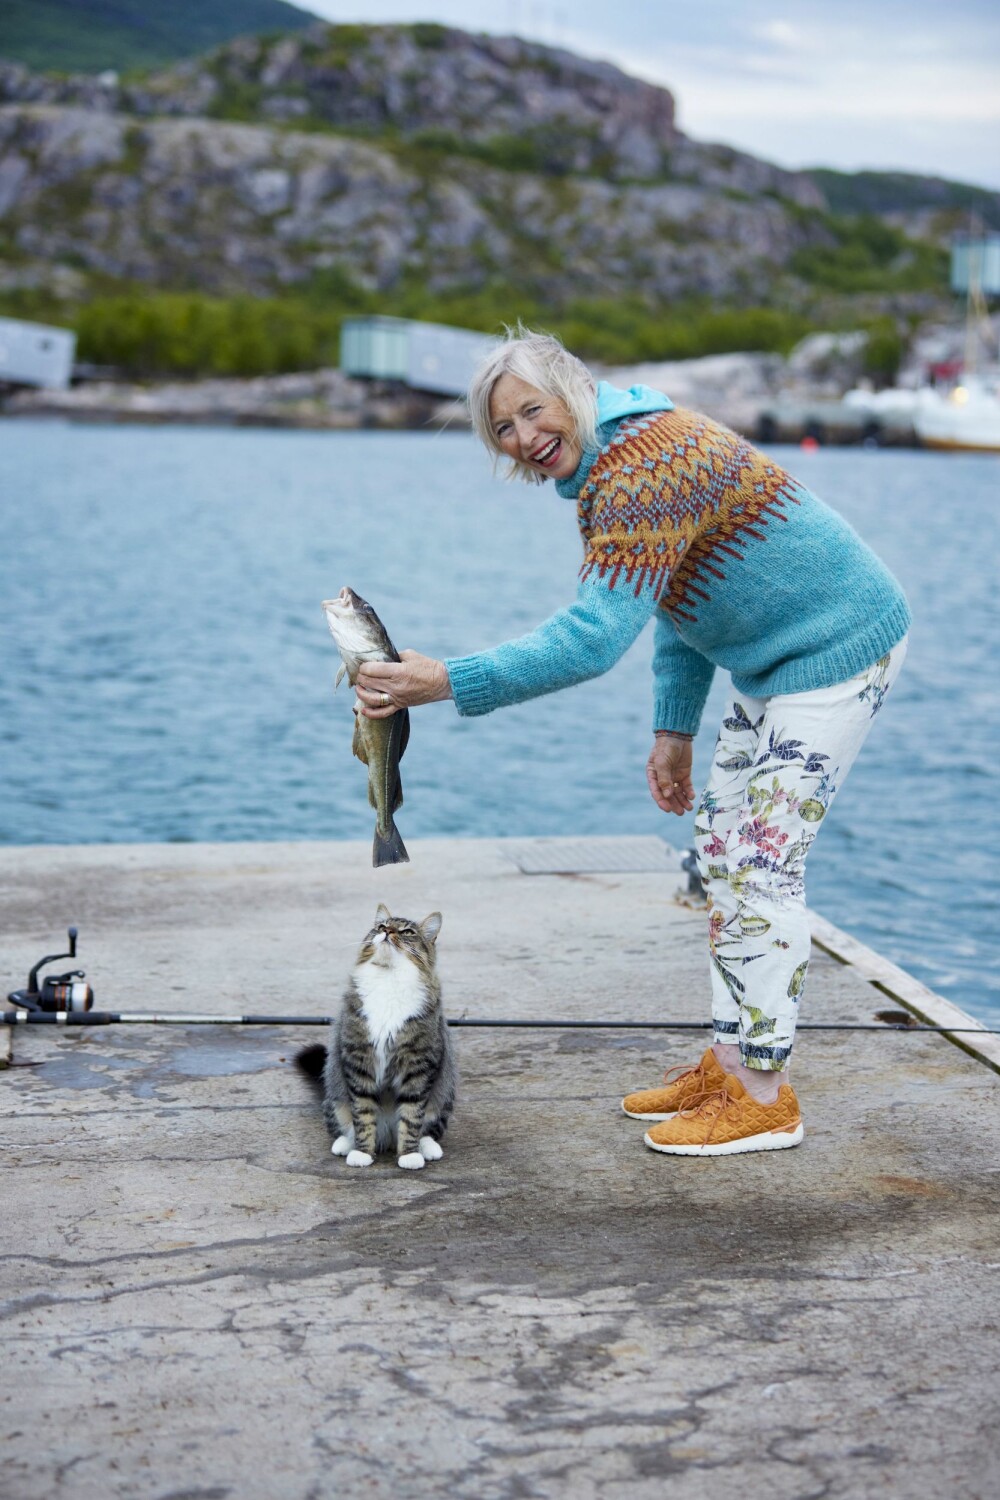 <b>MÅ-TING:</b> I mange år jobbet Randi mye, og tiden strakk bare til må-ting, ikke har-lyst-på-ting. Fiske er en av tingene hun trives med og som hun bruker tid på i dag. Her sikler katten Gråmann på dagens fangst.